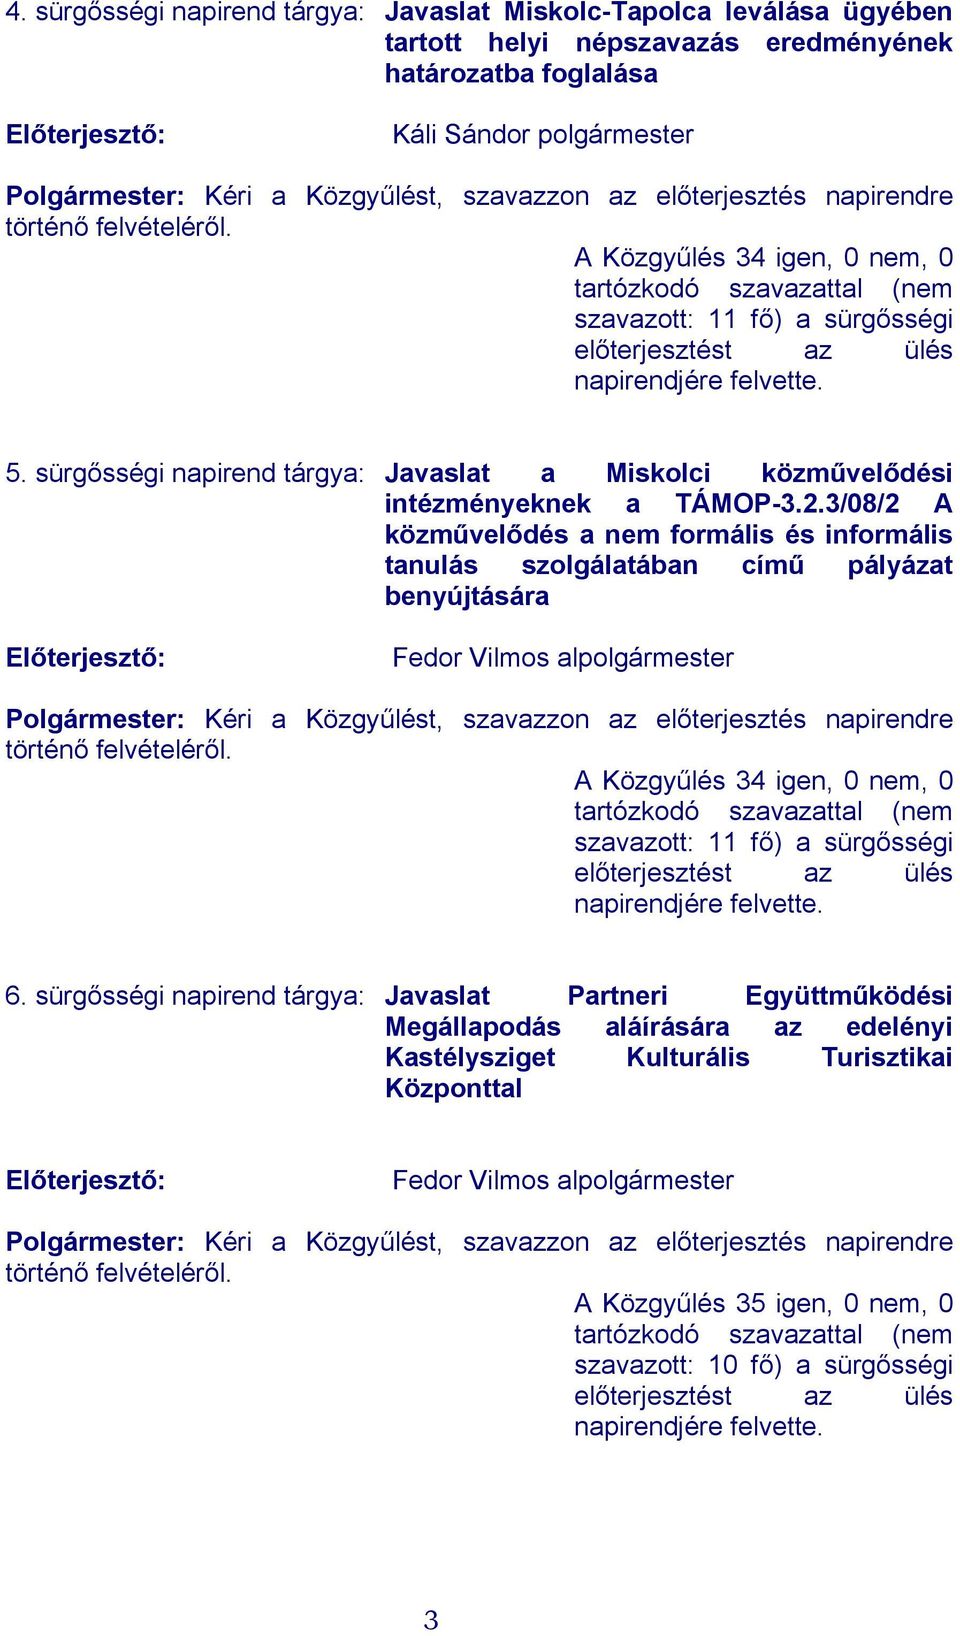 sürgősségi napirend tárgya: Javaslat a Miskolci közművelődési intézményeknek a TÁMOP-3.2.